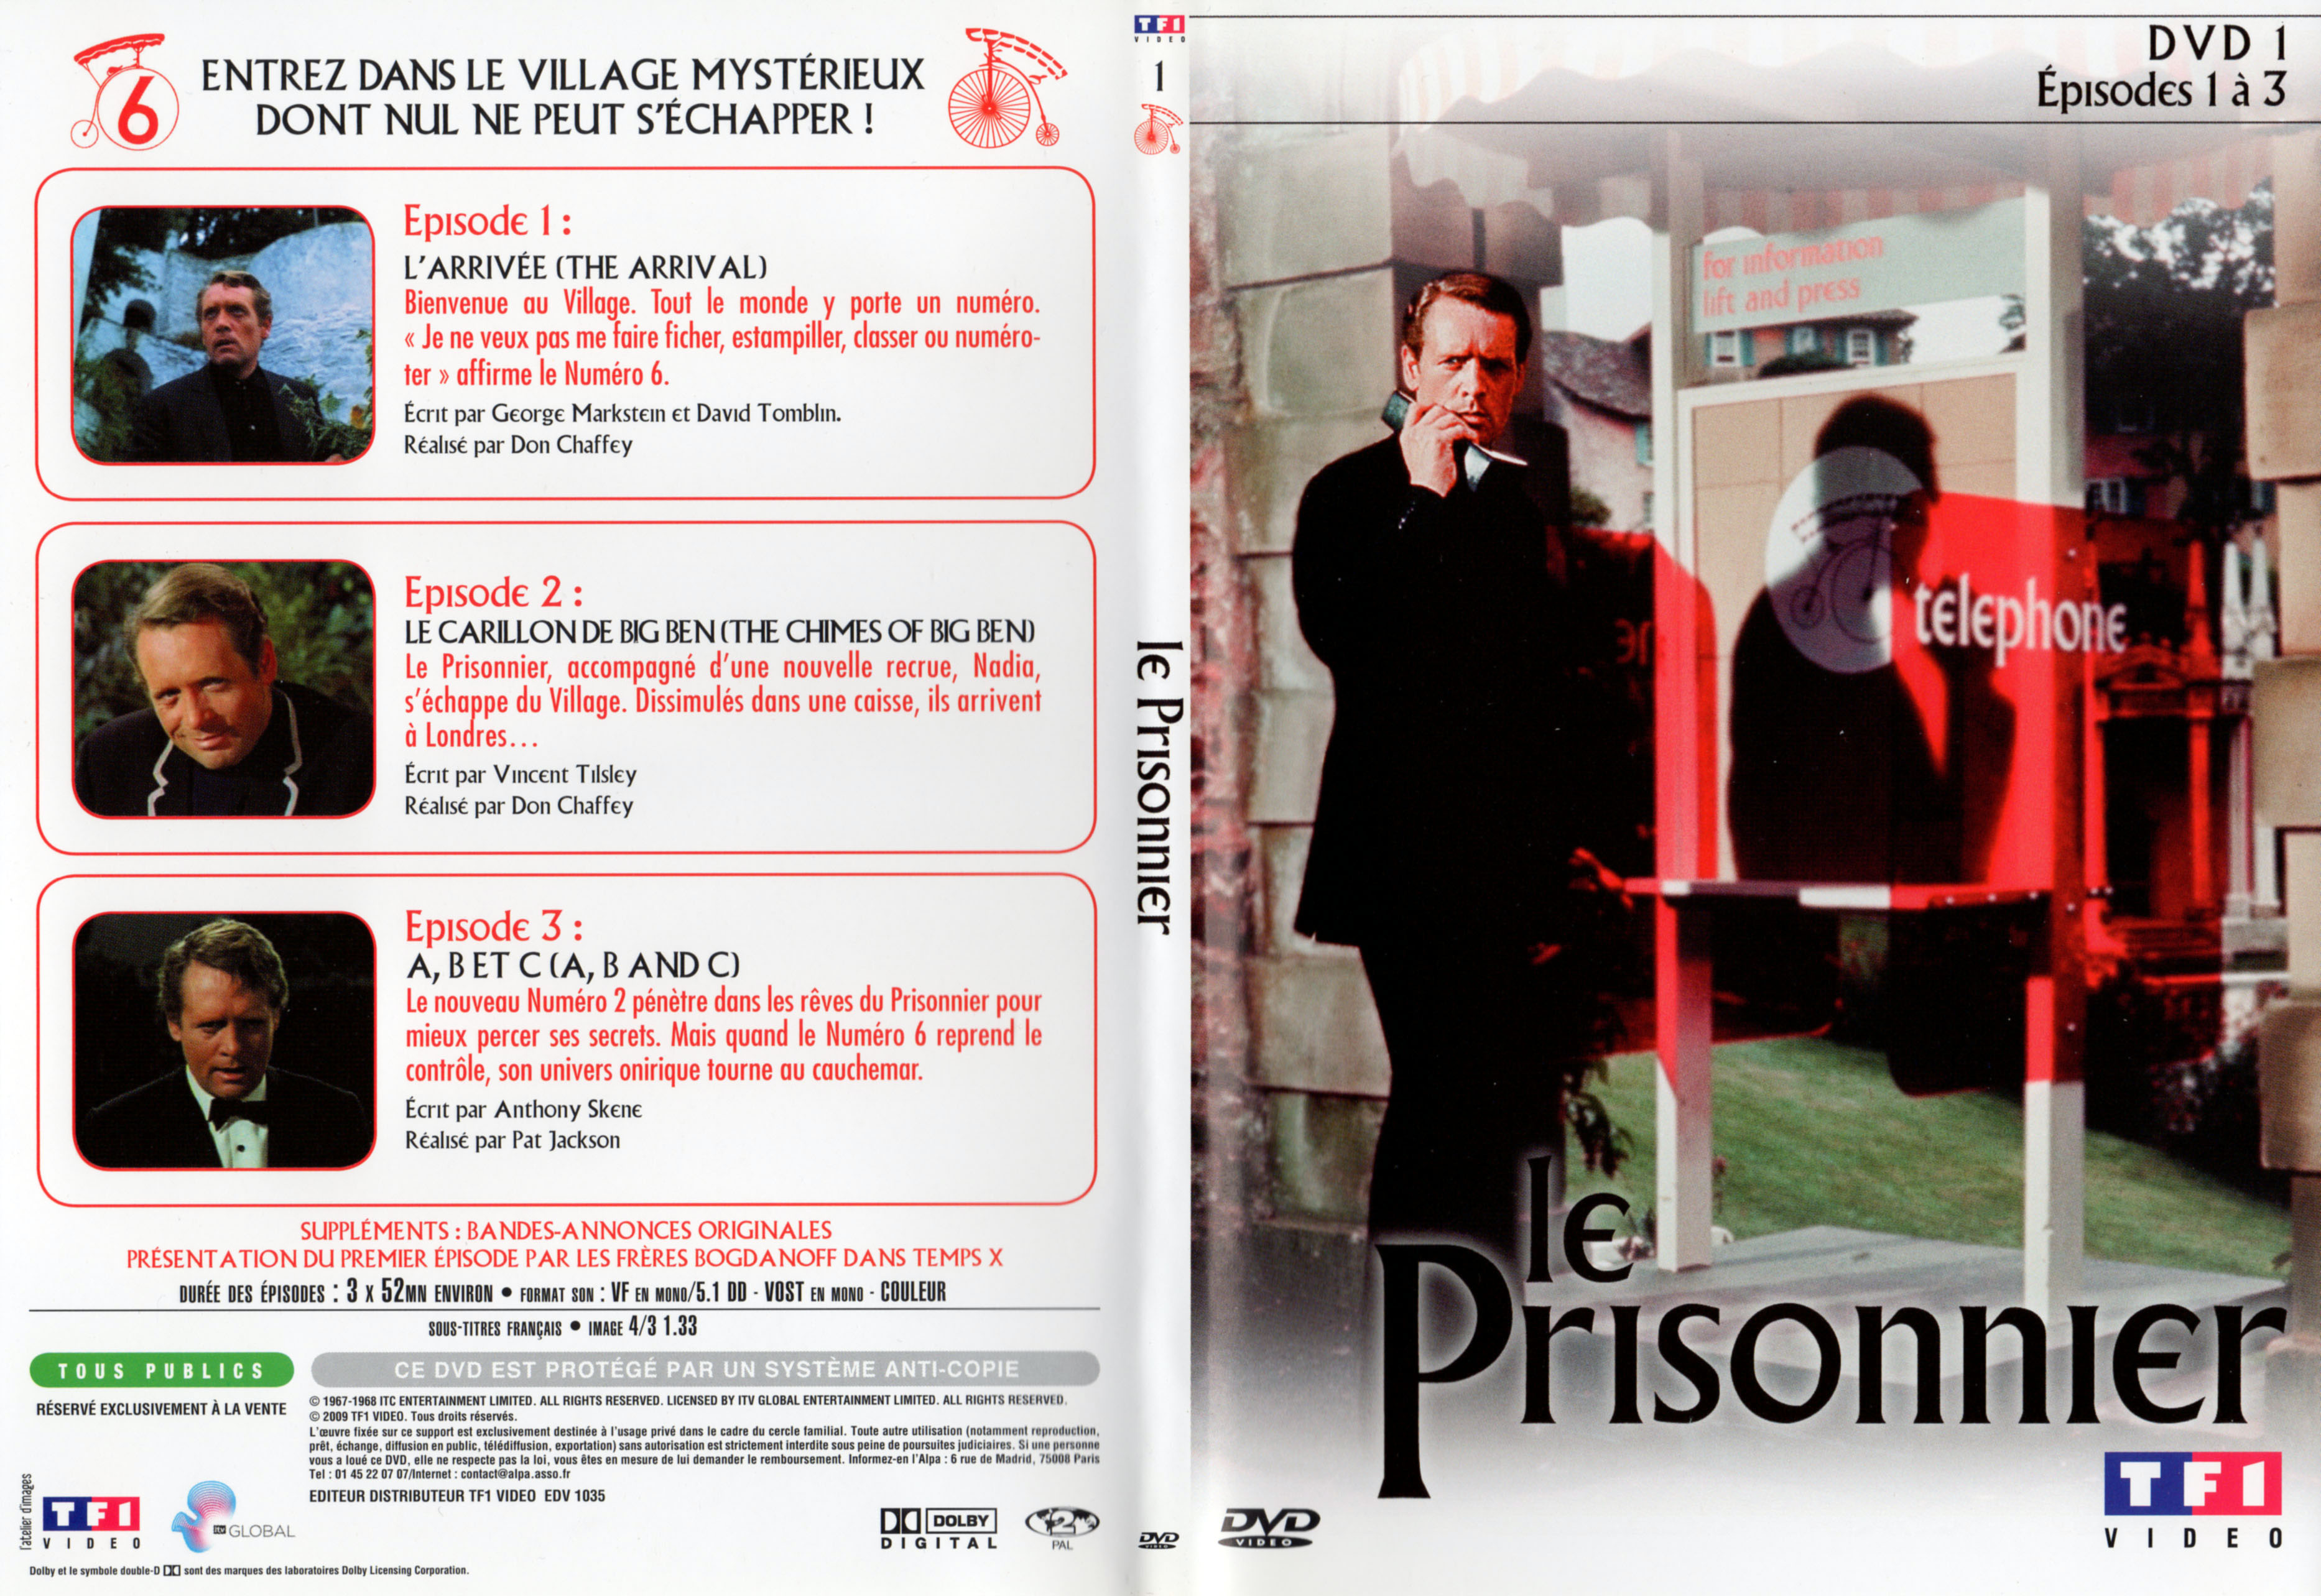 Jaquette DVD Le prisonnier DVD 1 v2